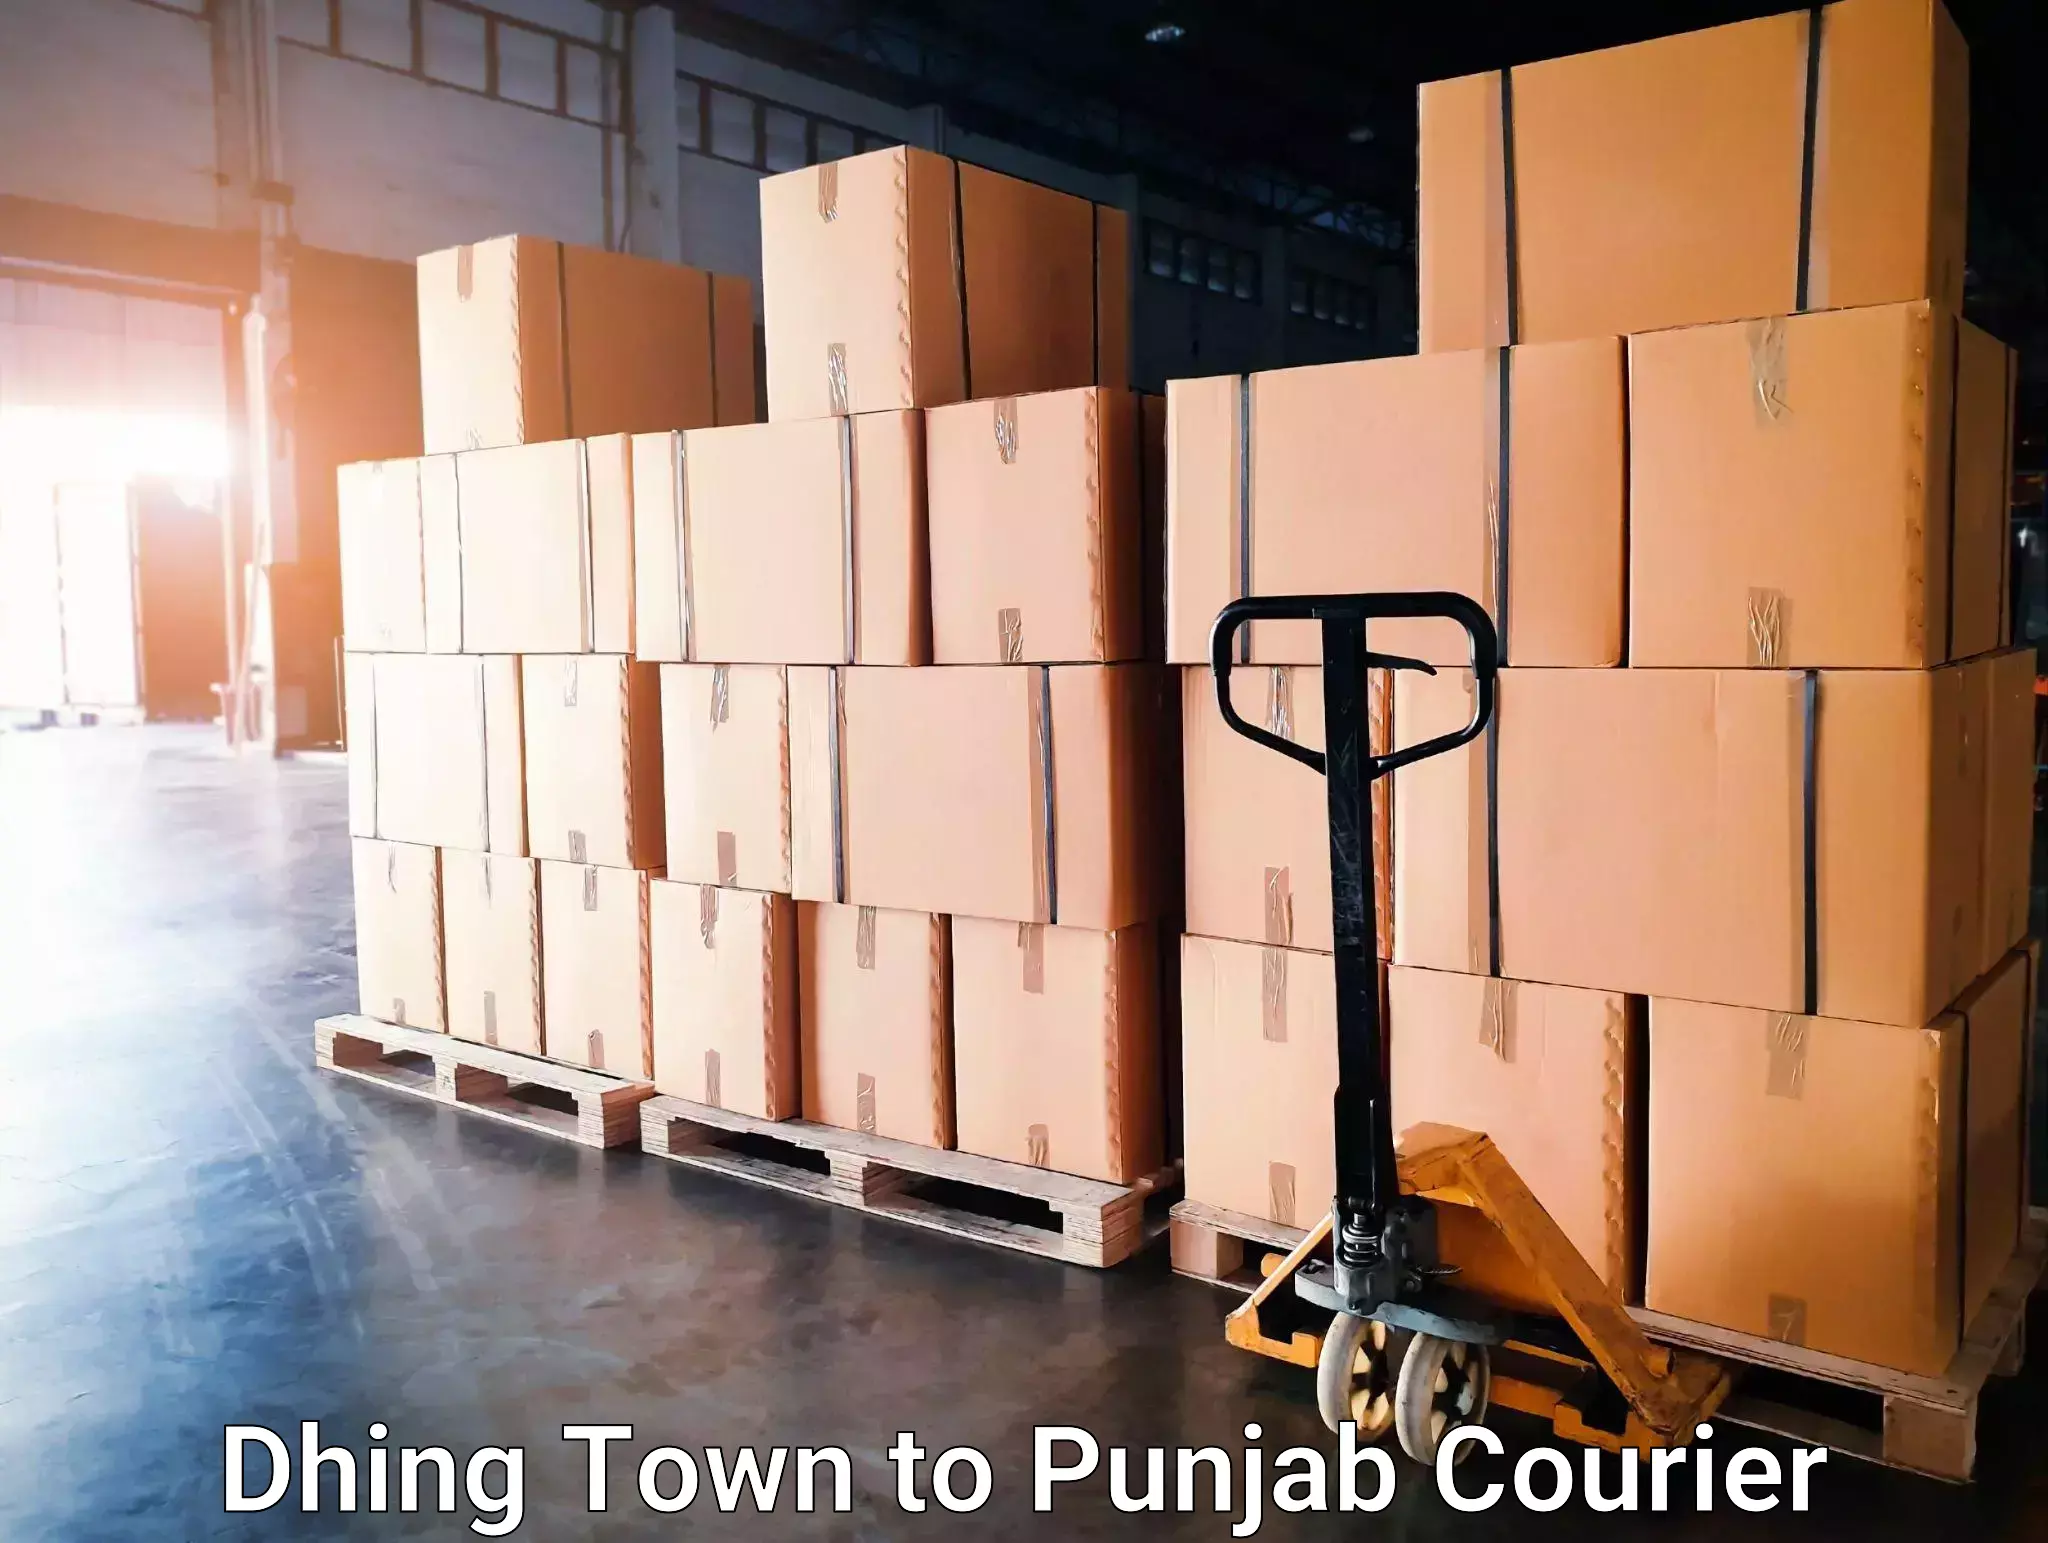 Digital courier platforms Dhing Town to Punjab